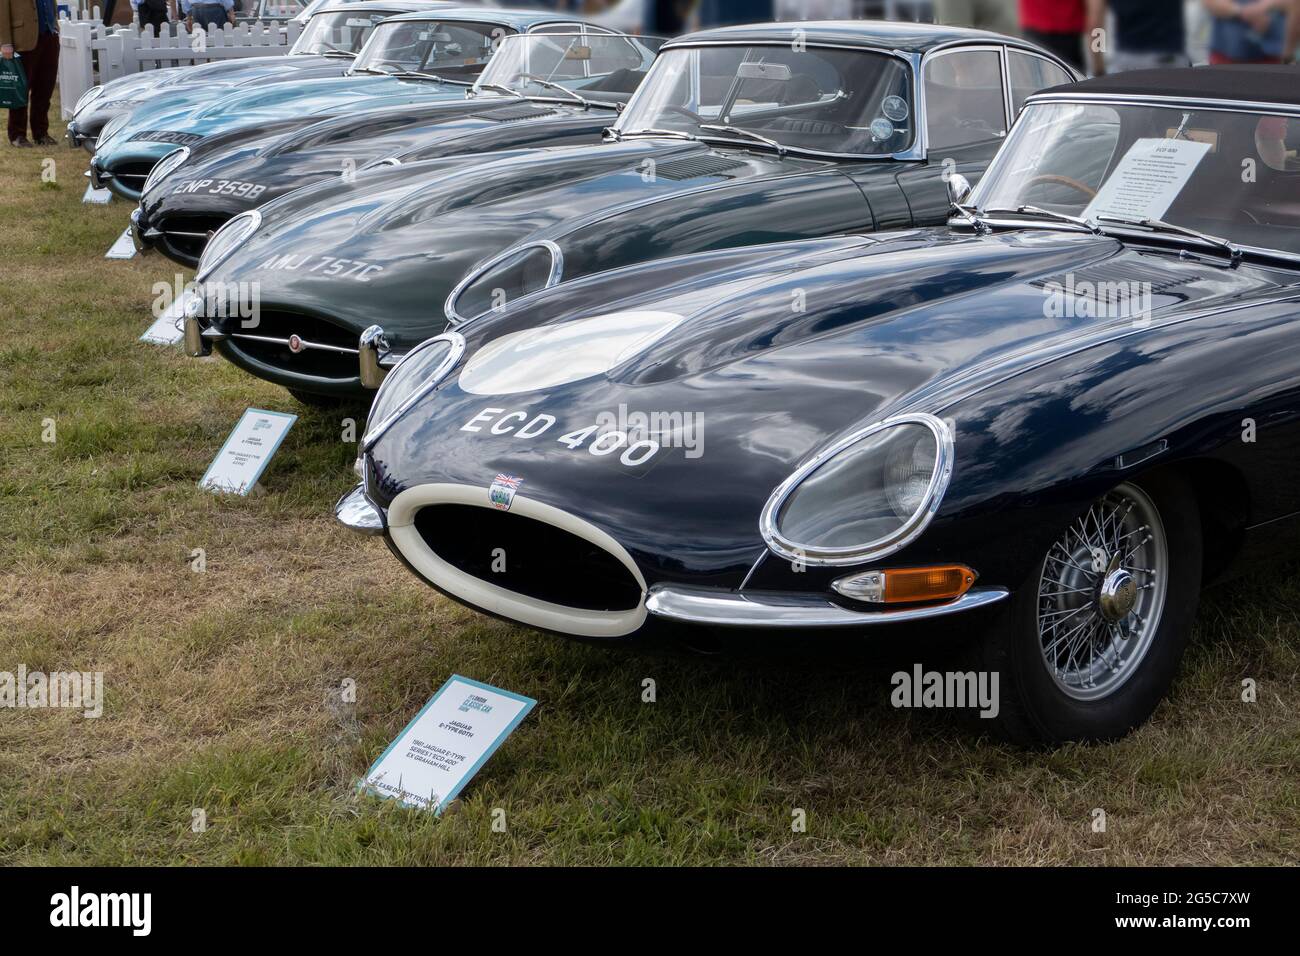 60ème anniversaire de la Jaguar E Type lors du salon de voiture classique de Londres 2021 Syon Park Londres UK 25/6/2021 Banque D'Images